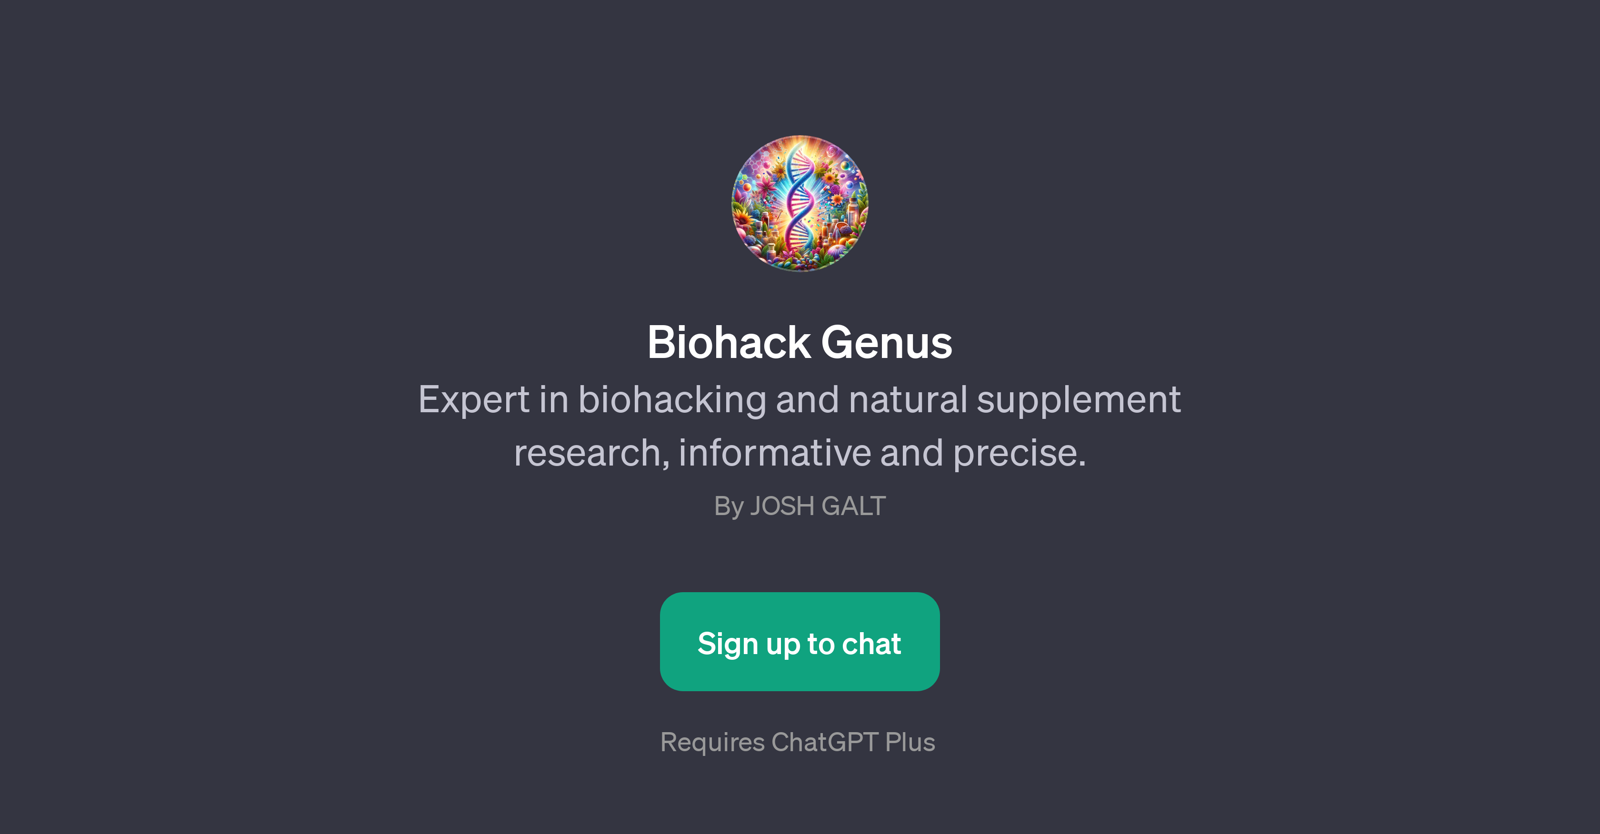 Biohack Genus website